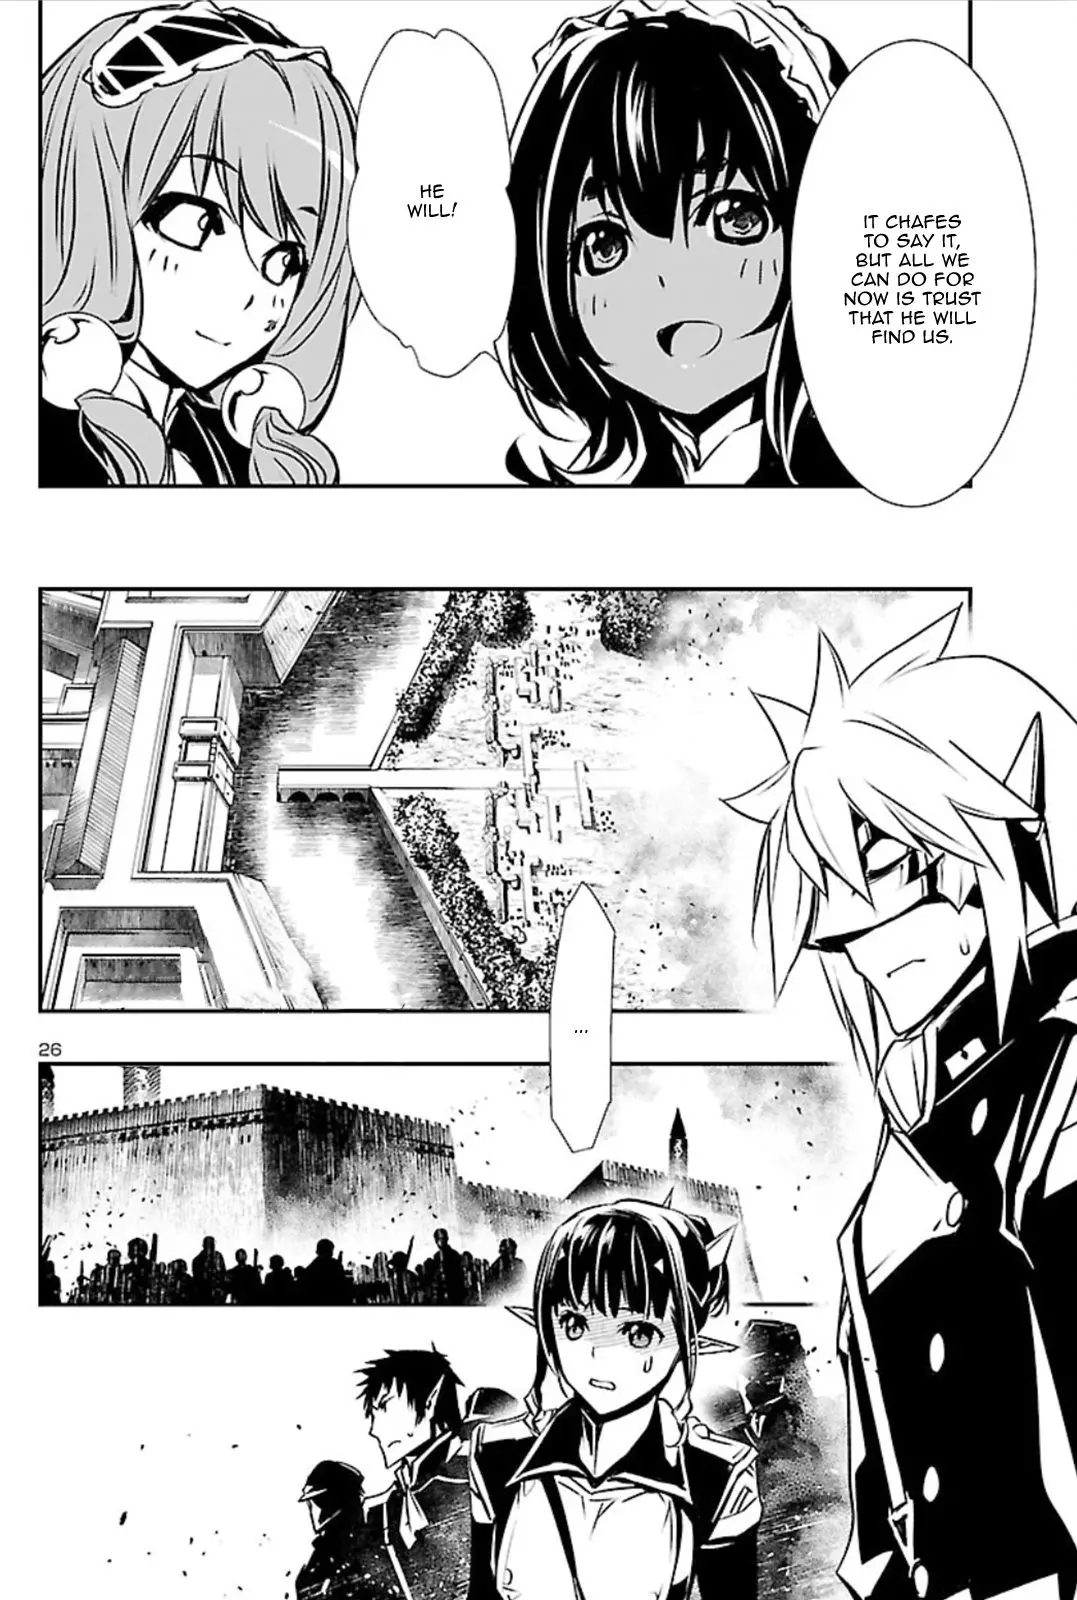 Shinju no Nectar - 41 page 25